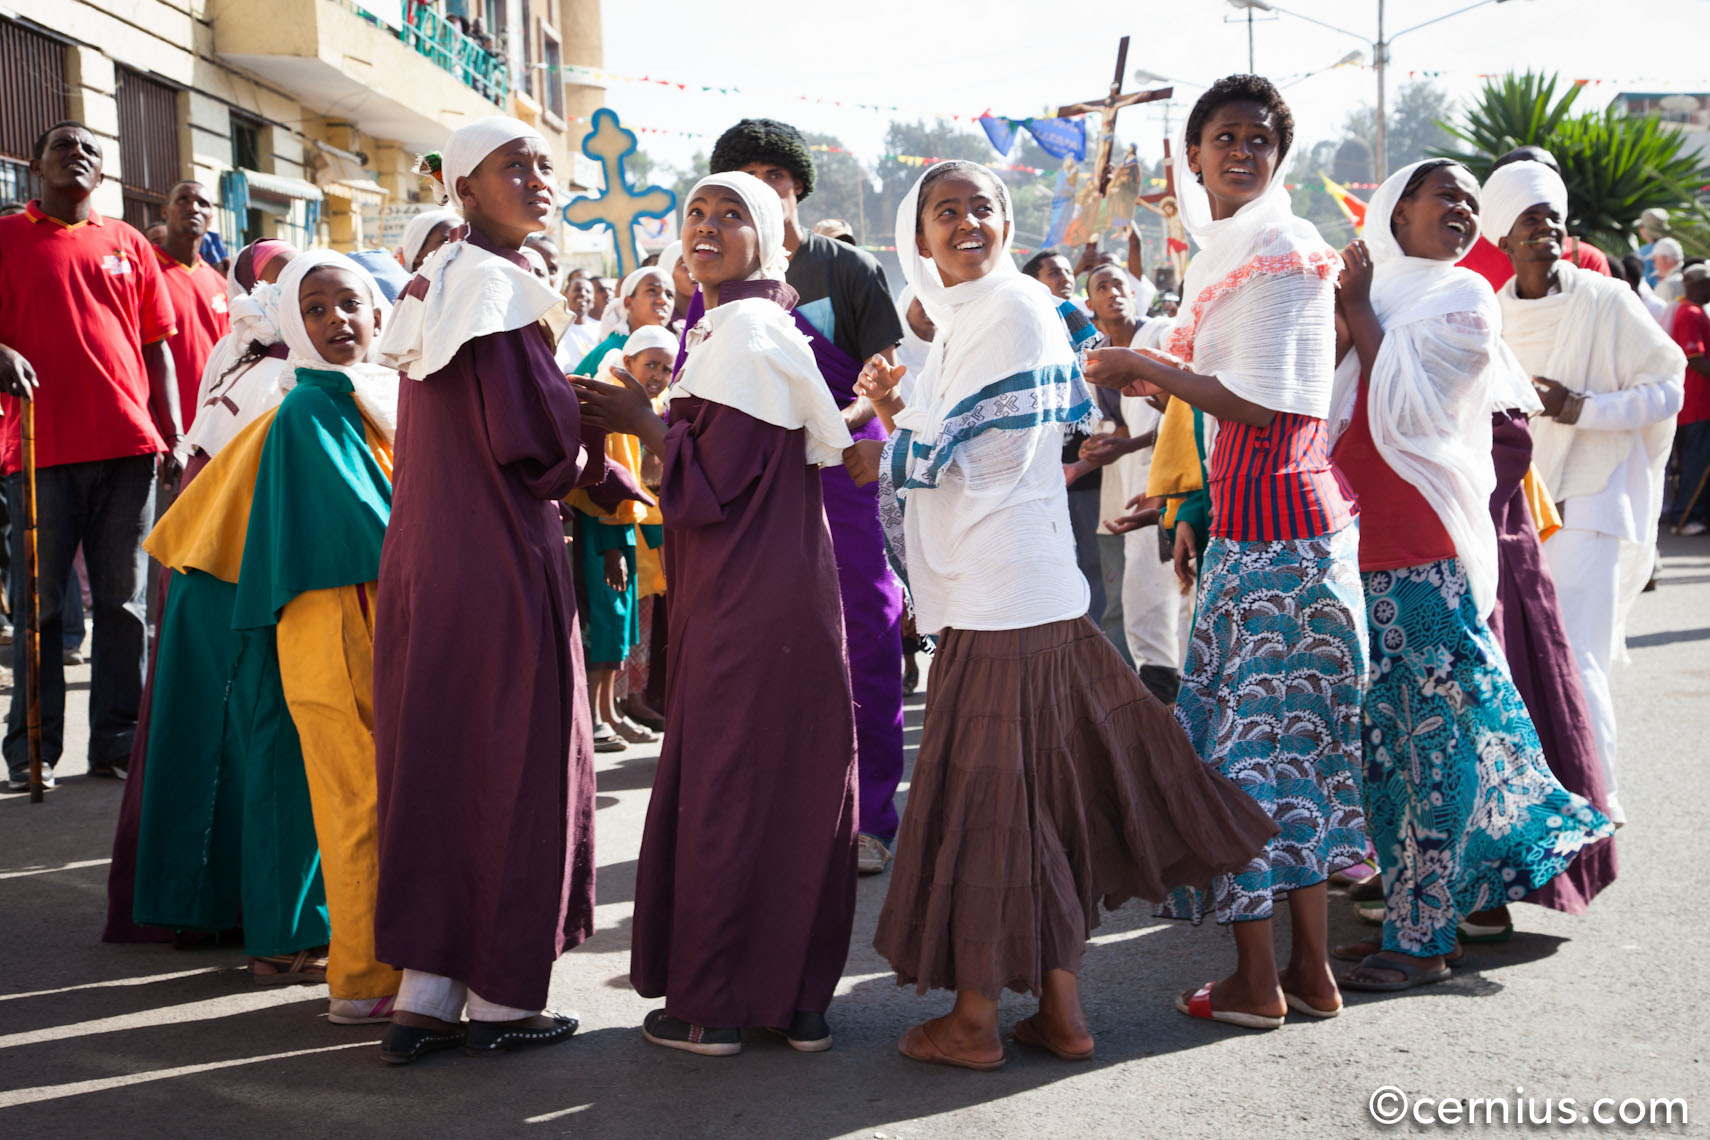 Timkat Celebrations in Ethiopia | Juozas Cernius